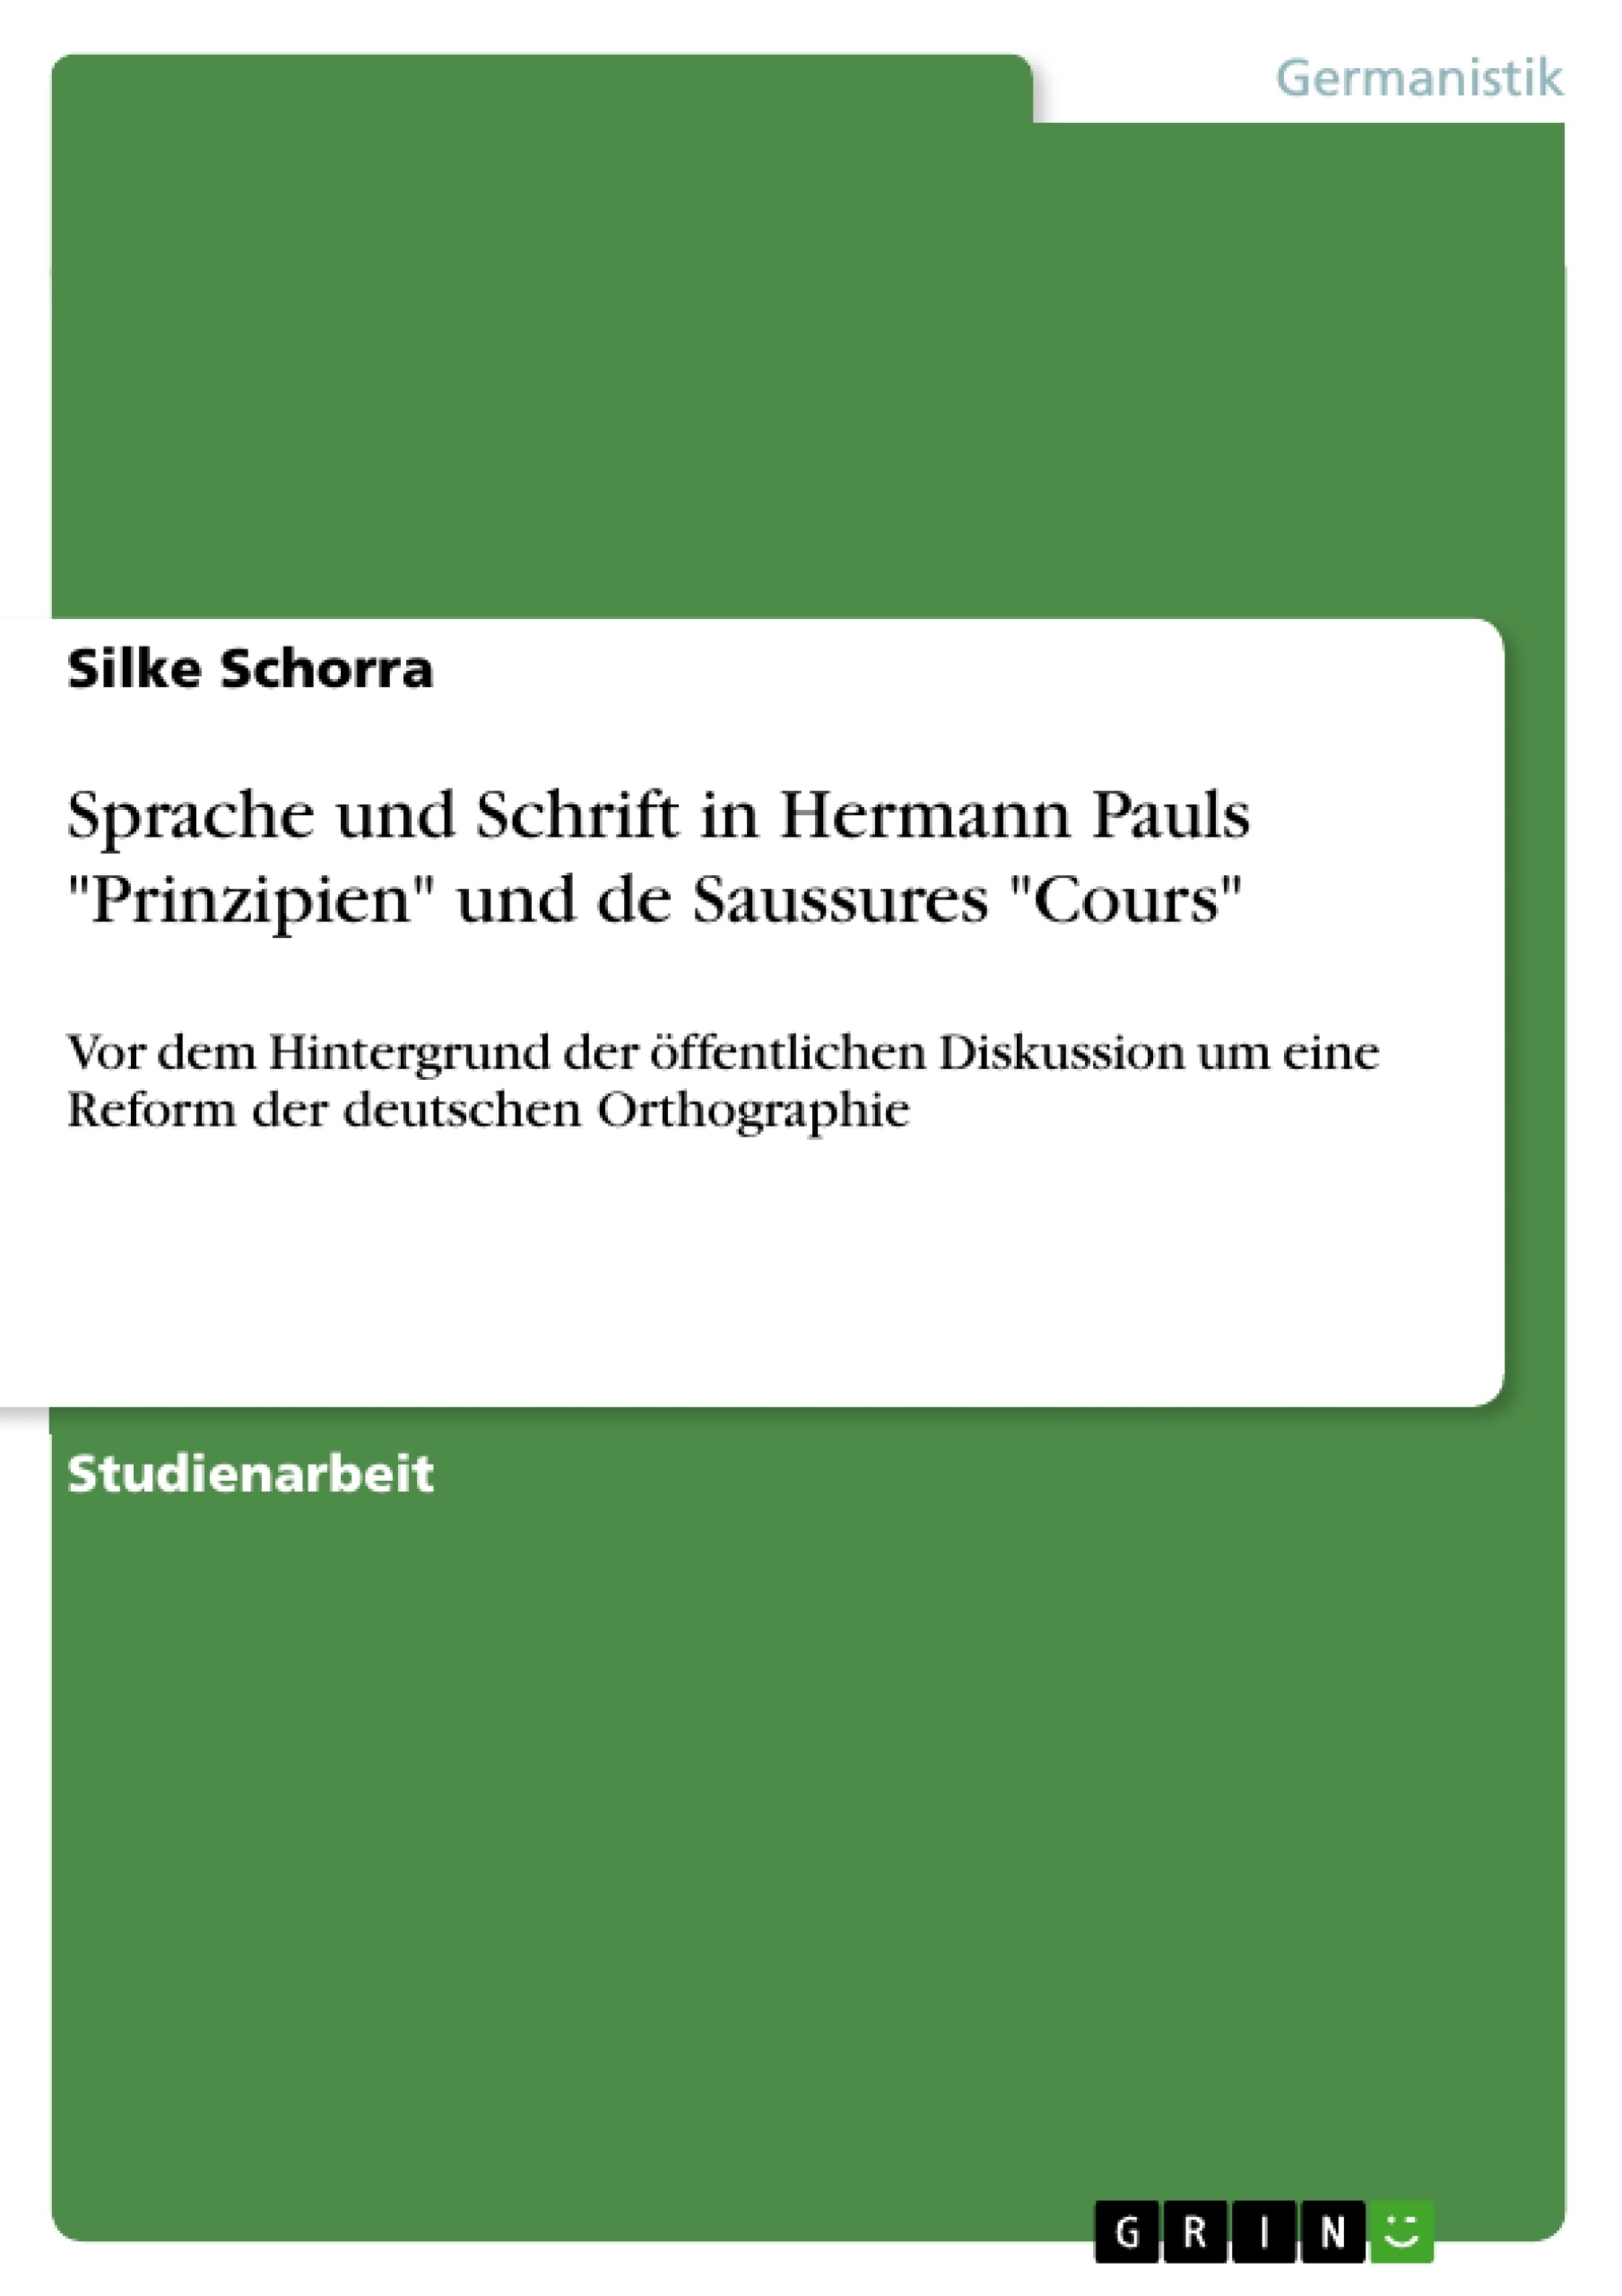 Titel: Sprache und Schrift in Hermann Pauls "Prinzipien" und de Saussures "Cours"